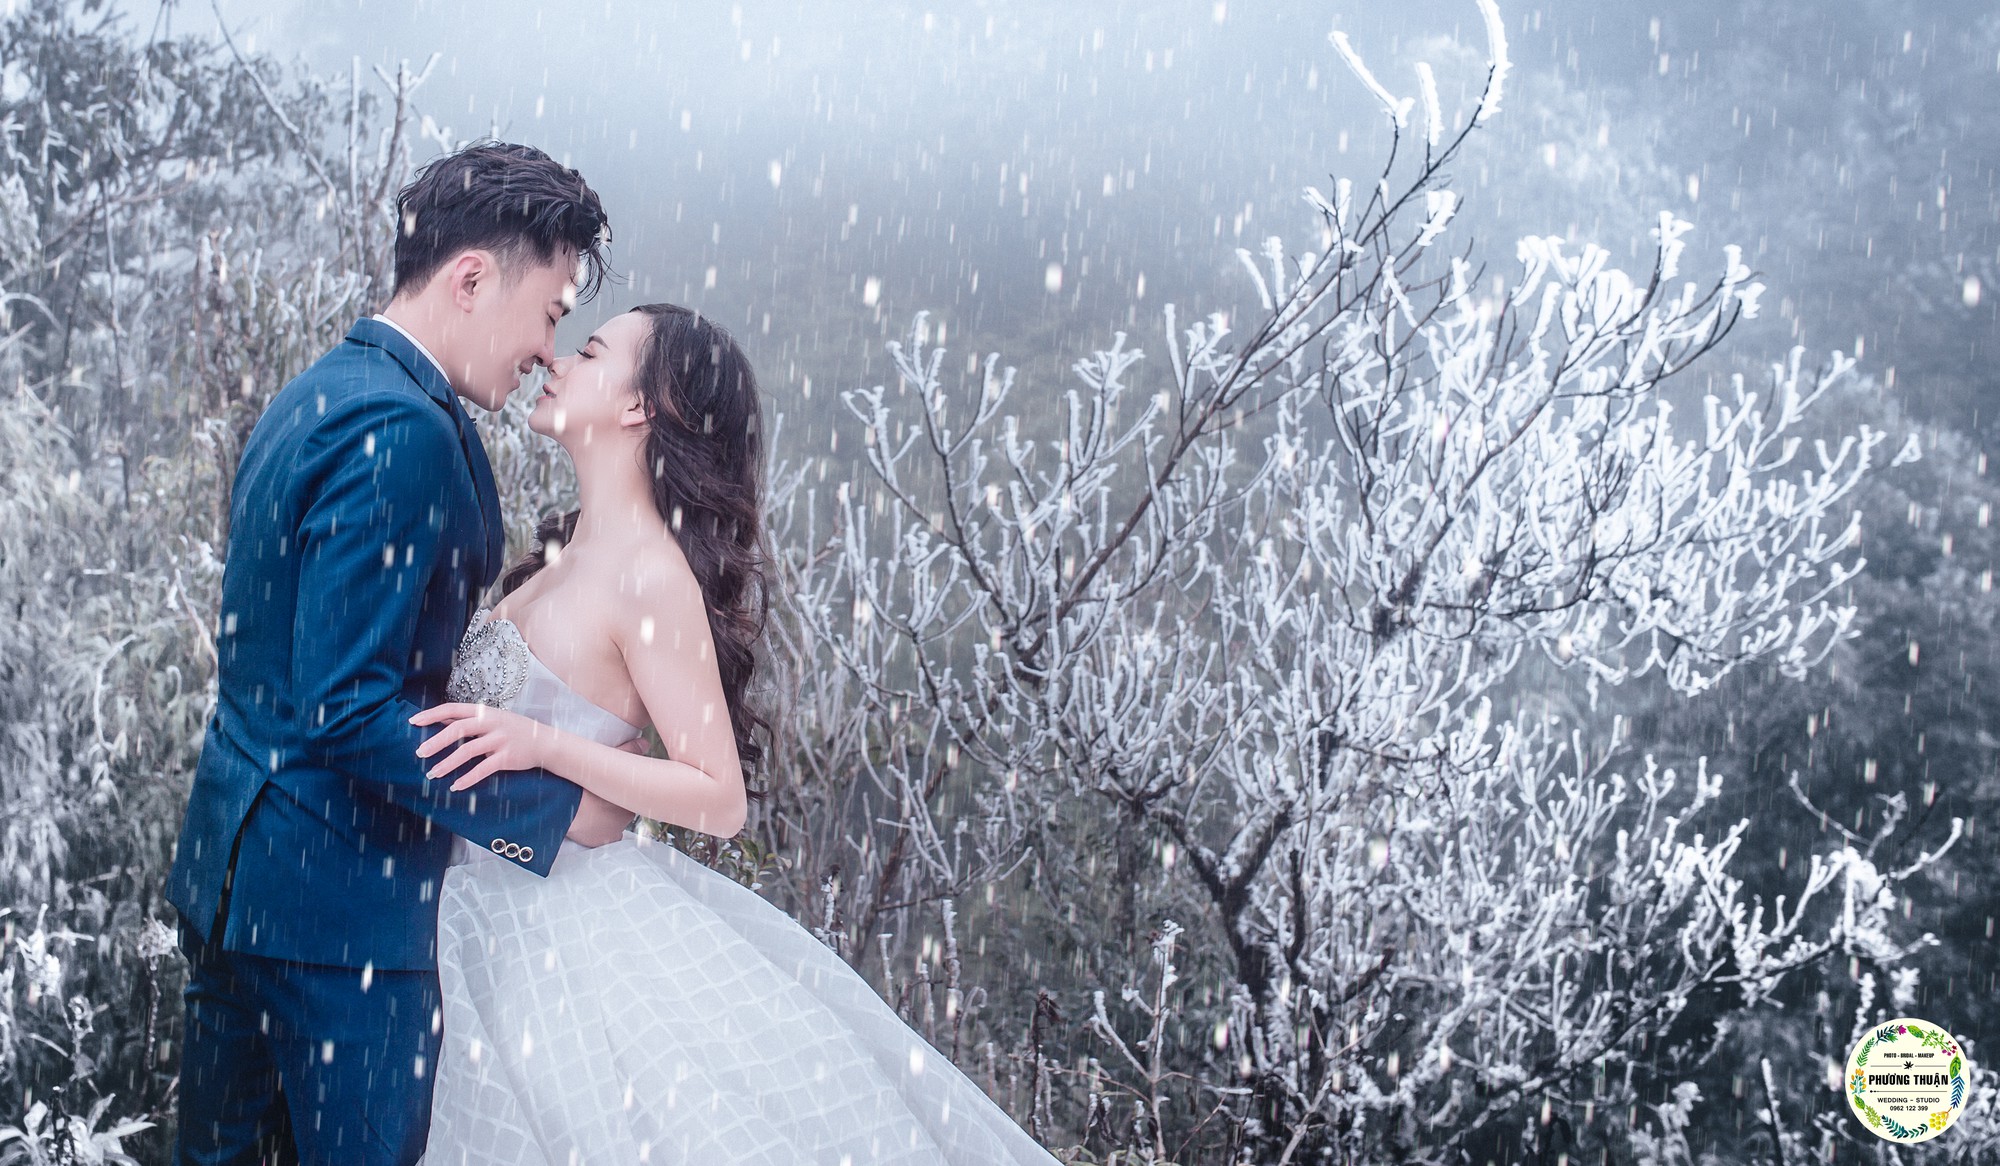 Đây là một bộ ảnh cưới đầy bất ngờ với vai trần băng tuyết trong không khí se lạnh của Hà Nội. Hãy để chúng tôi đưa bạn đến nơi đây và thấy sức hút của bộ ảnh này. Tại đây, bạn sẽ có những bức hình đẹp nhất làm kỷ niệm cho một ngày trọng đại của bạn.